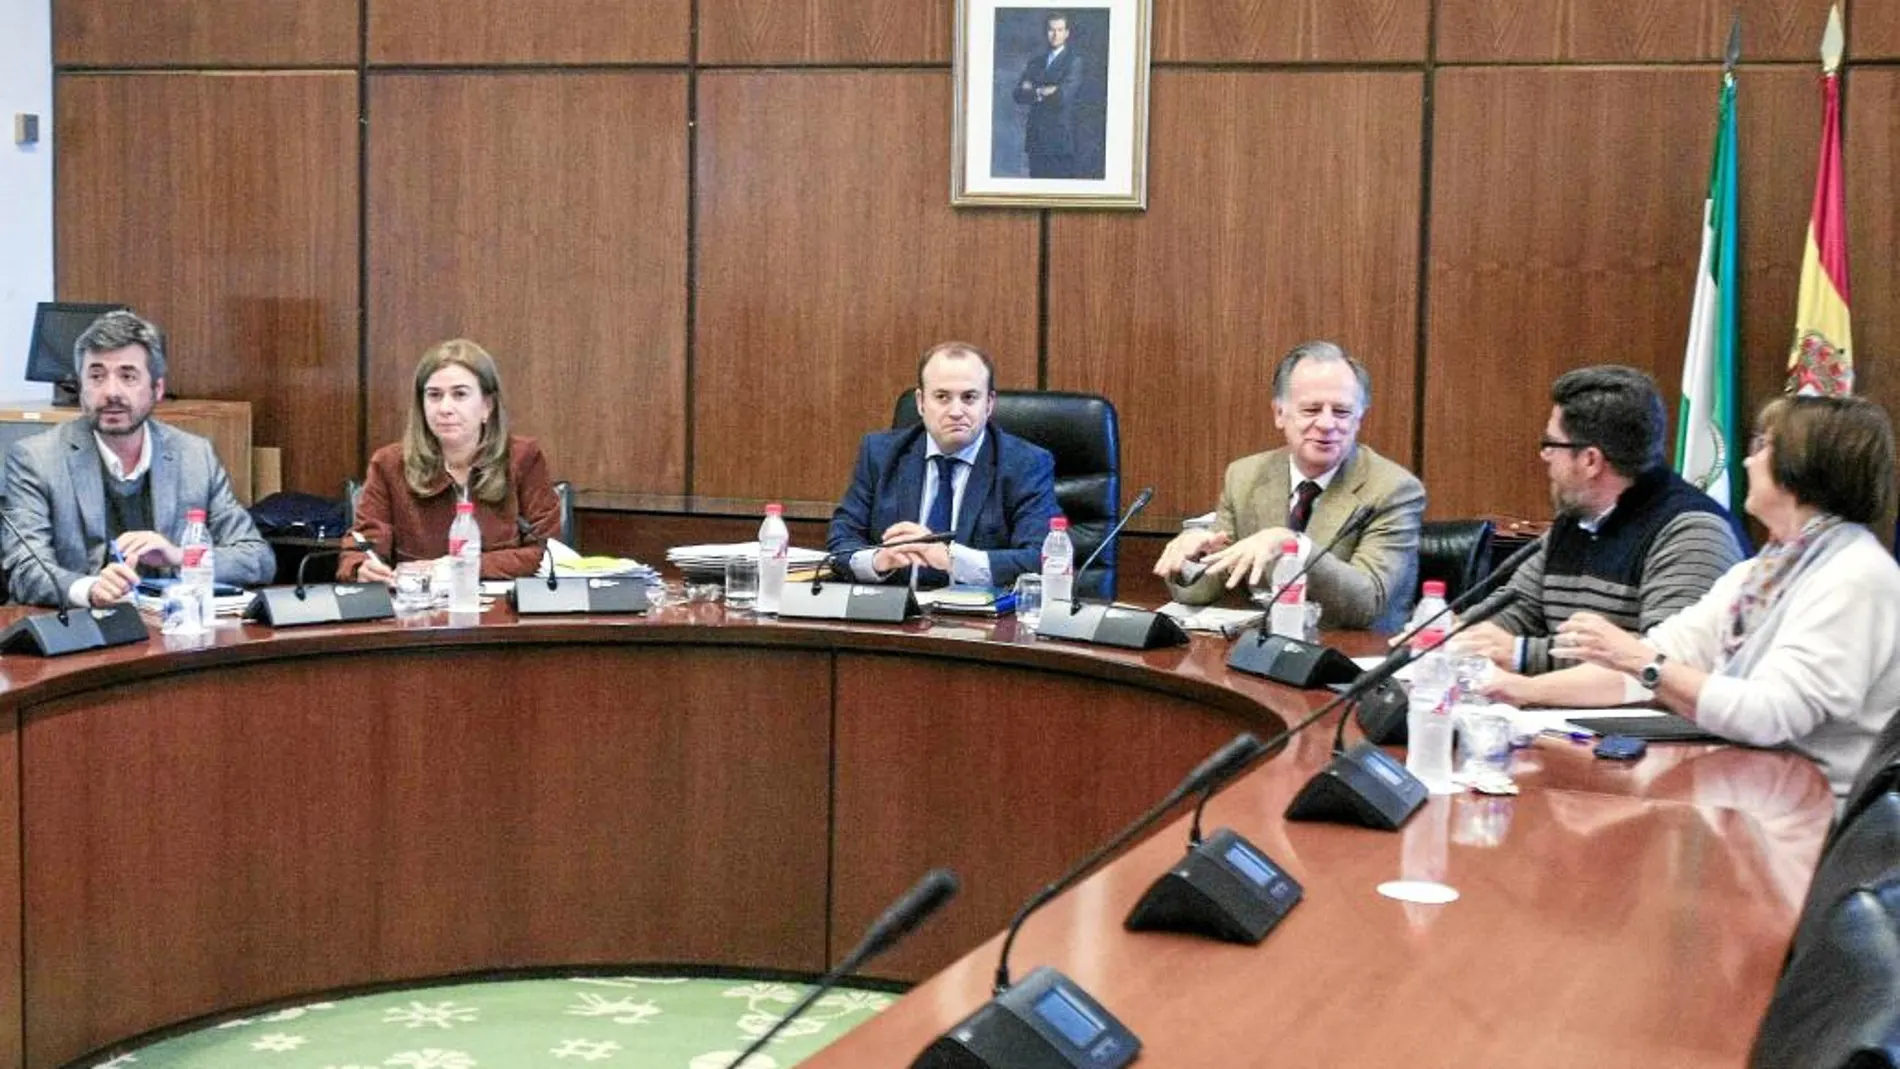 Los miembros de la comisión de investigación se reunieron ayer en el Parlamento andaluz